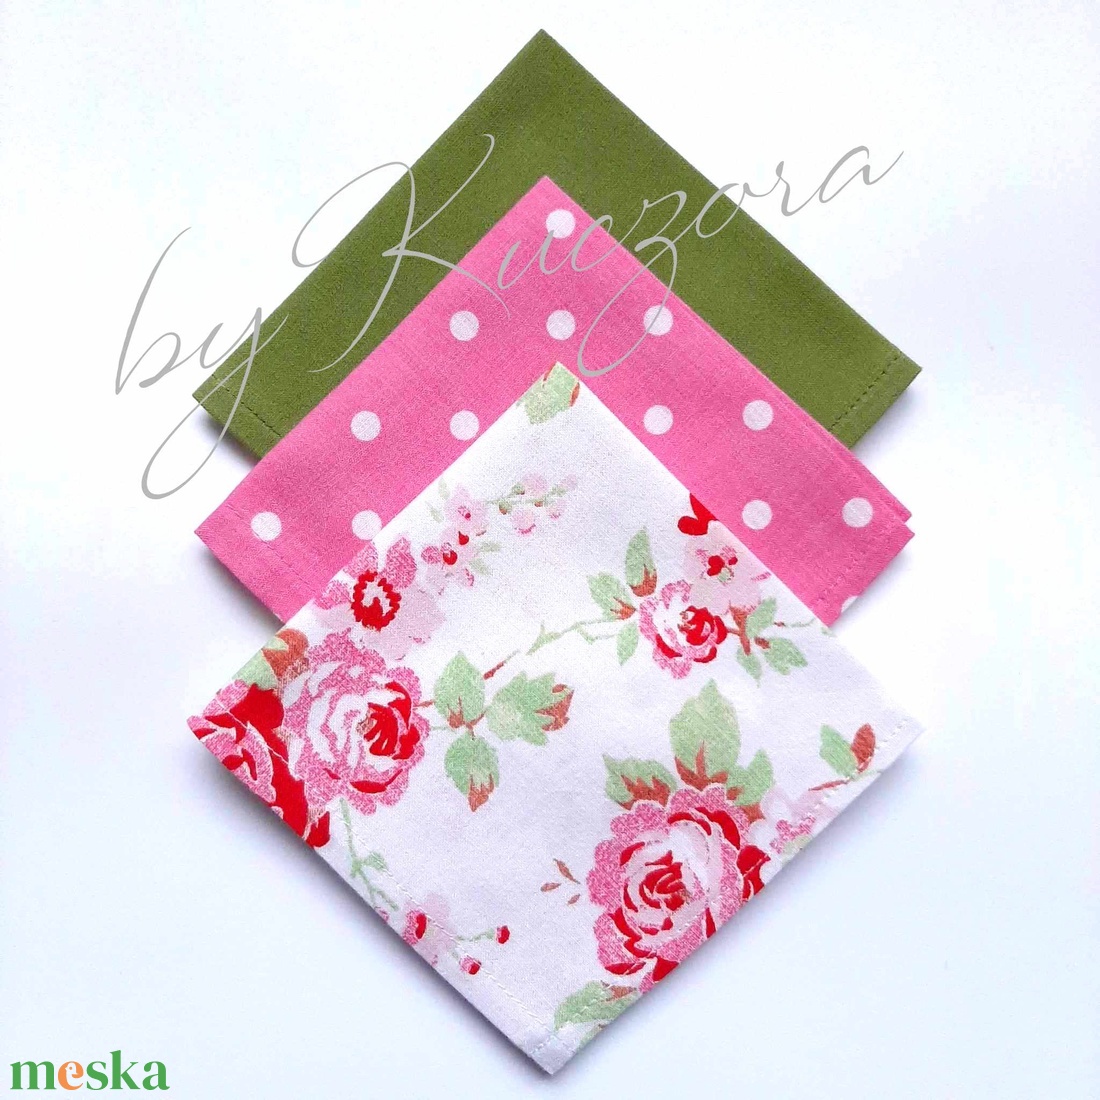 Textil zsebkendő szett, öko zsebkendő szett - zöld, rózsaszín pöttyös, rózsamintás - szépségápolás - egészségmegőrzés - Meska.hu